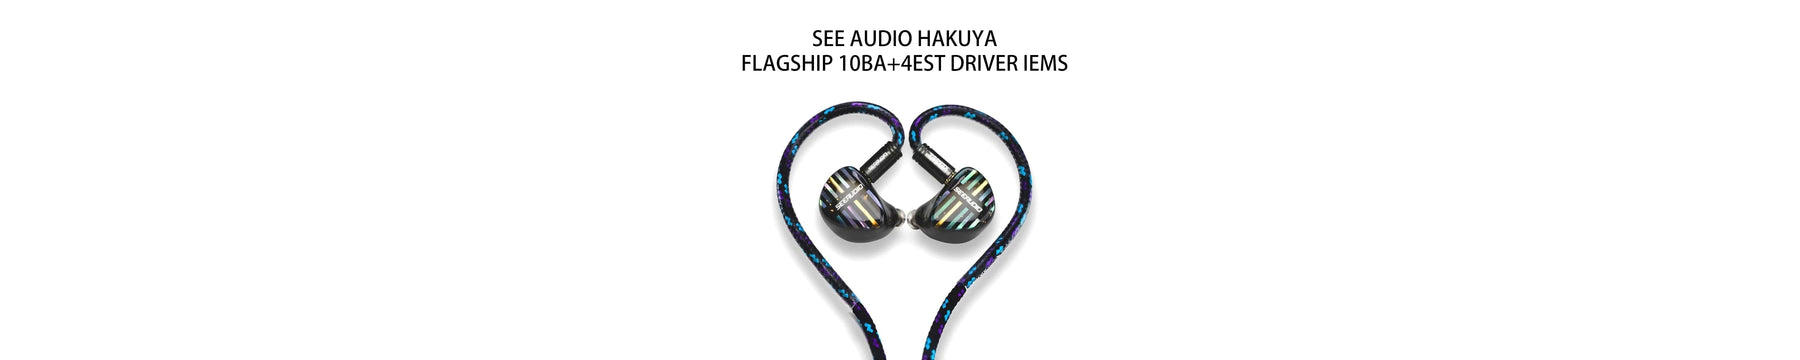 SeeAudio Hakuya Flagship 10BA+4EST Driver IEMs